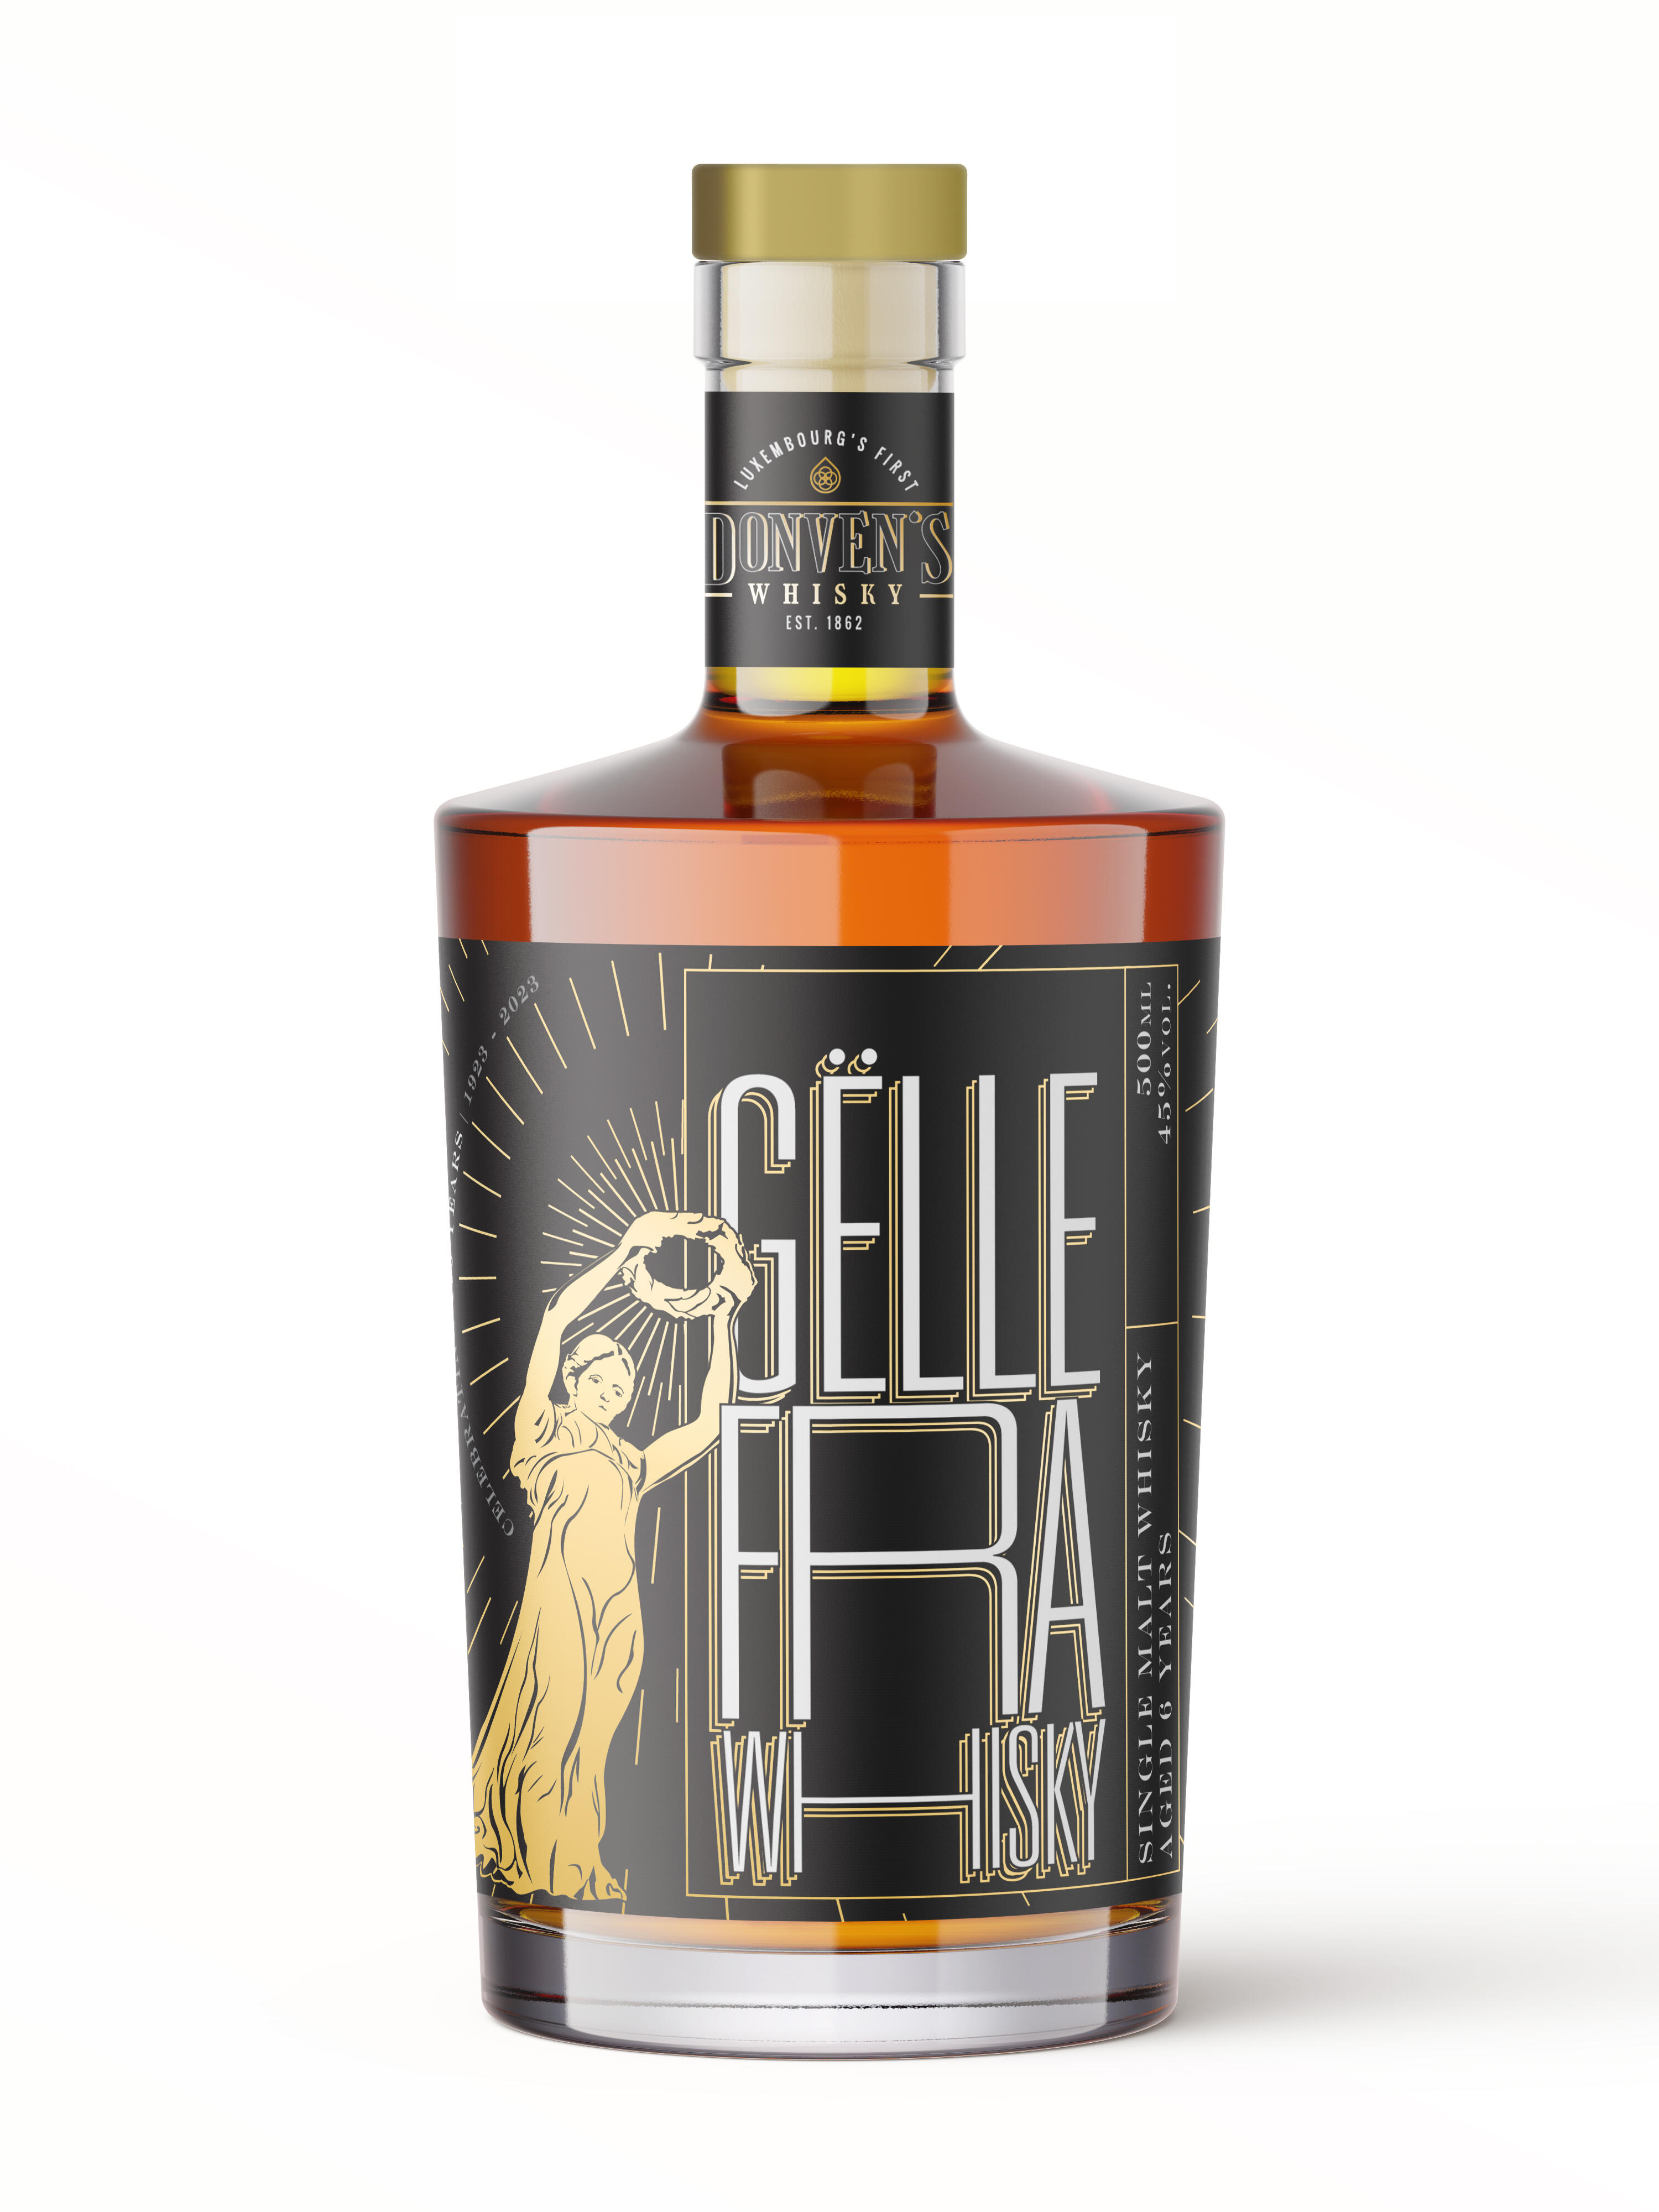 Diedenacker Gëlle Fra Single Malt Whisky 6 years